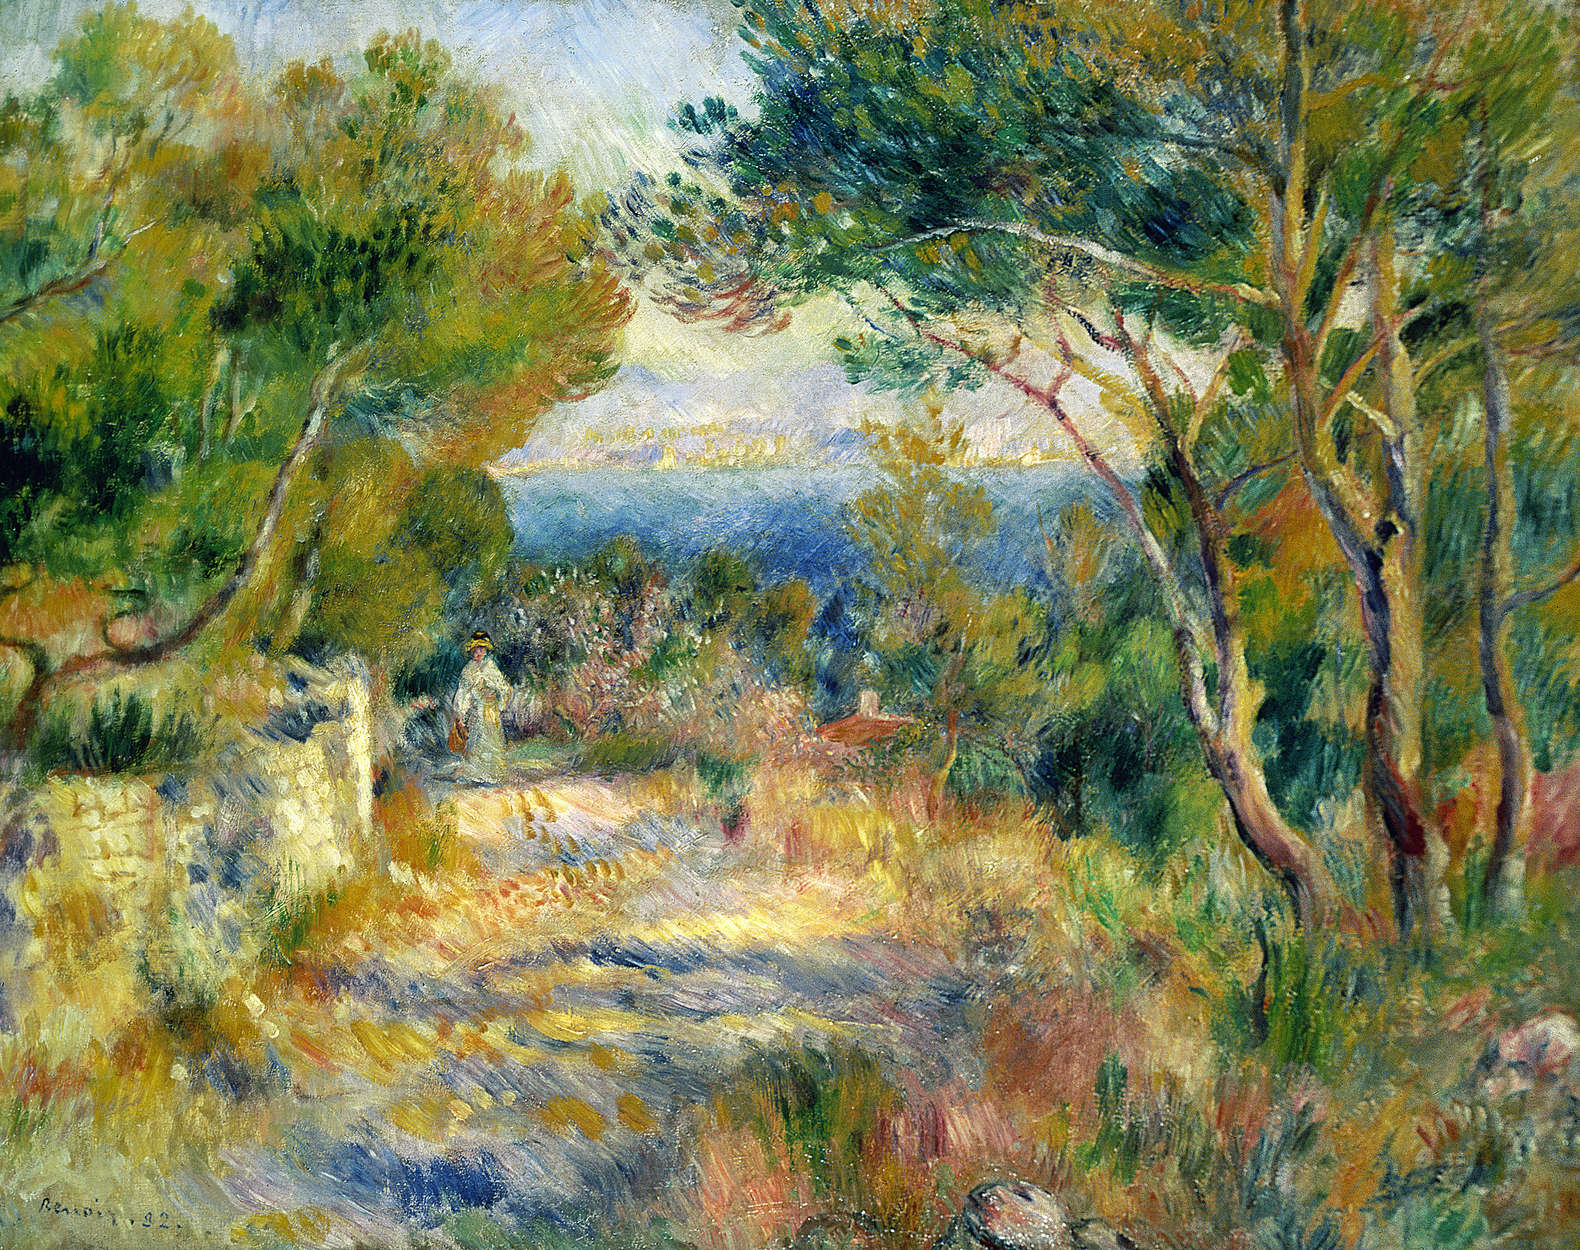             Fotobehang "L'Estaque" van Pierre Auguste Renoir
        